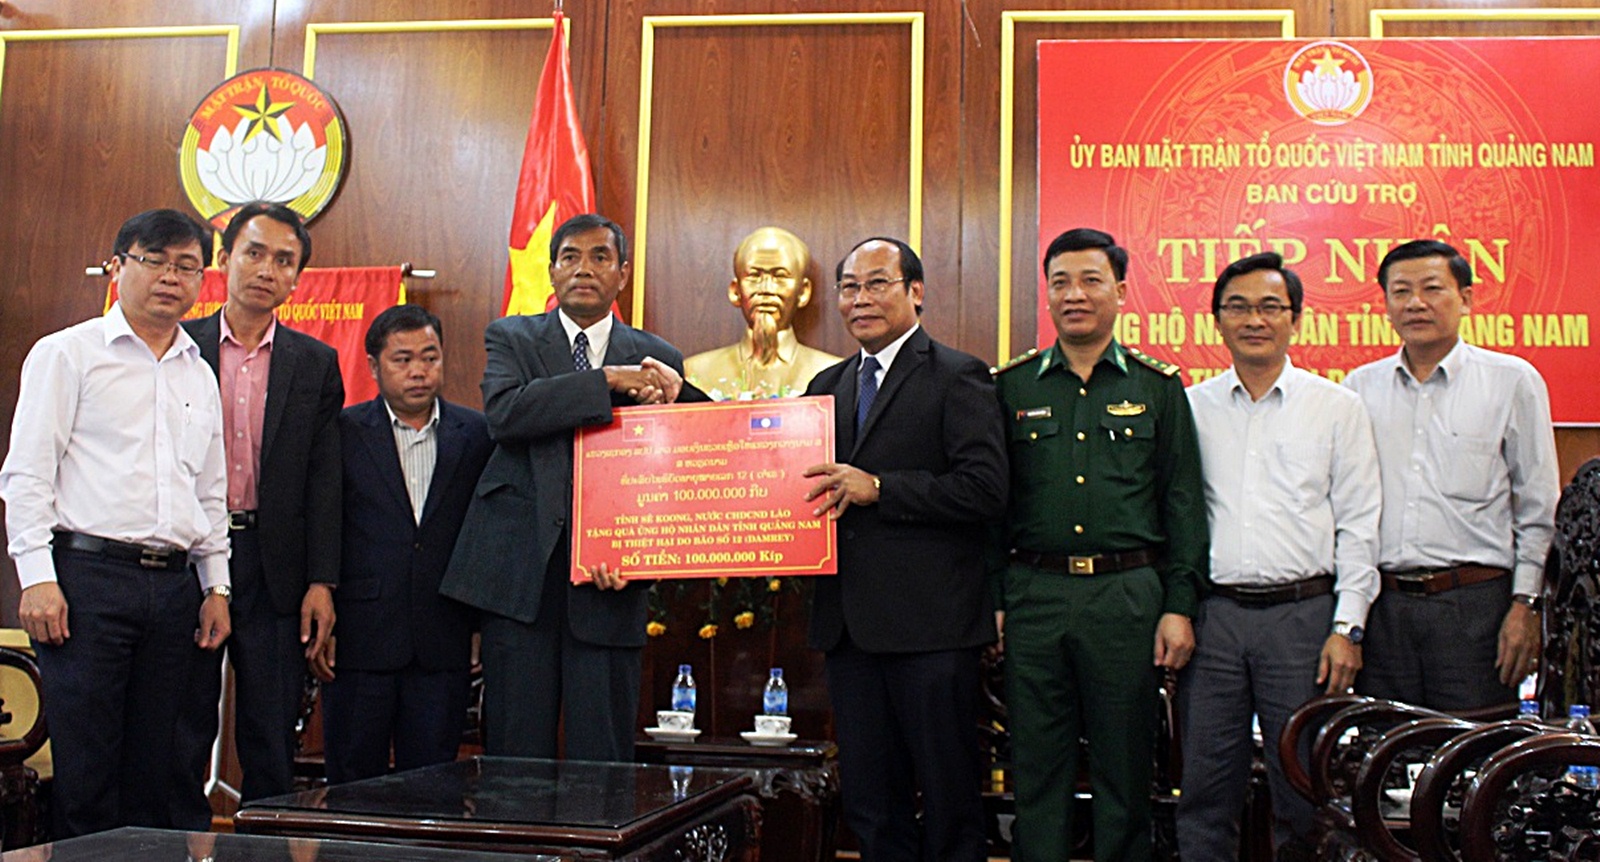 Tỉnh Sê Kông ủng hộ người dân vùng lũ Quảng Nam gần 300 triệu đồng